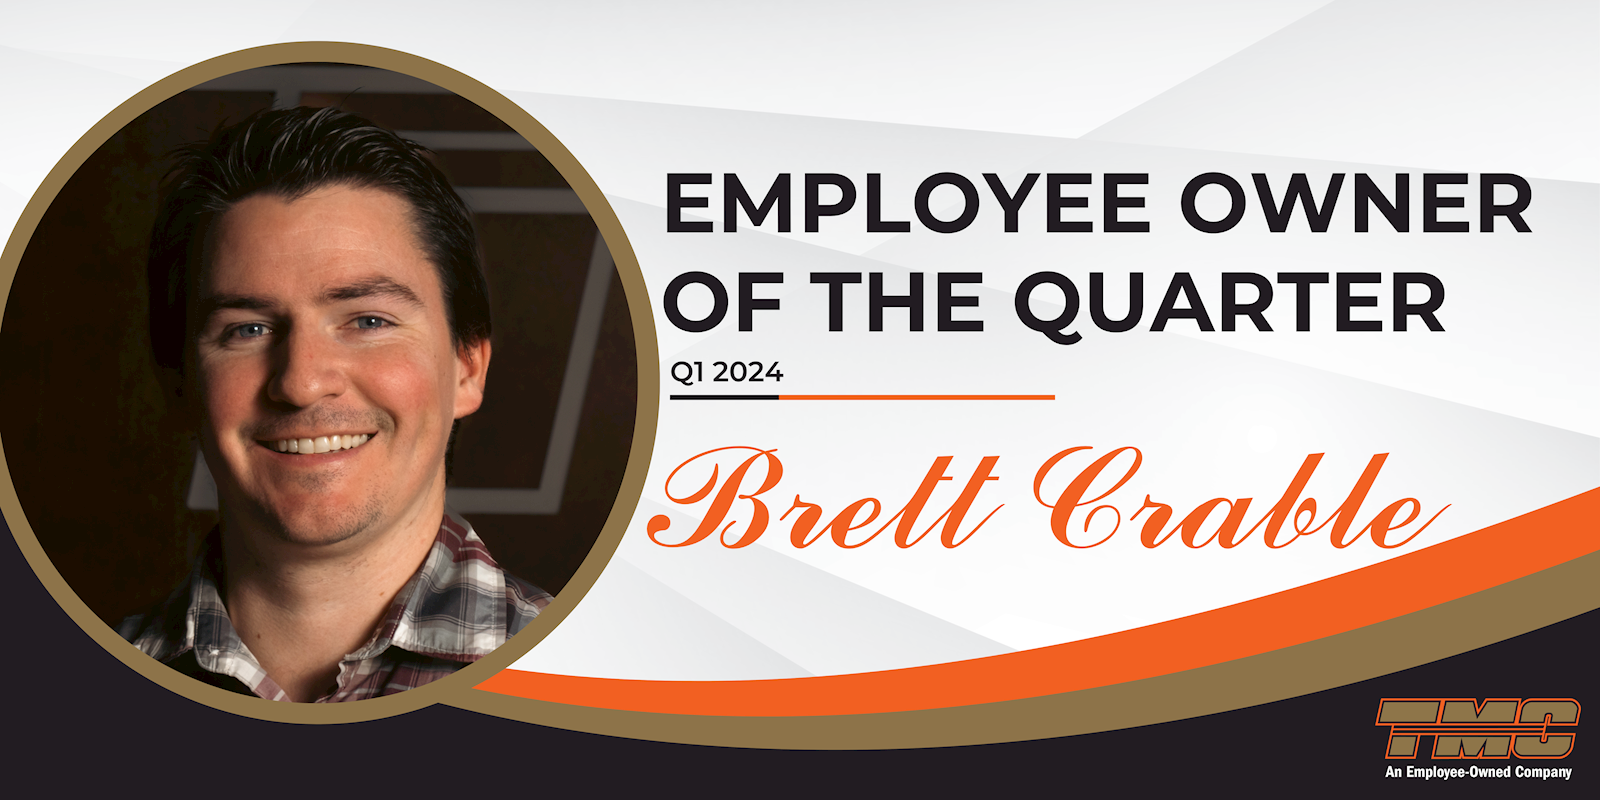 Brett Crable Named Employee Owner of the Quarter for Q1